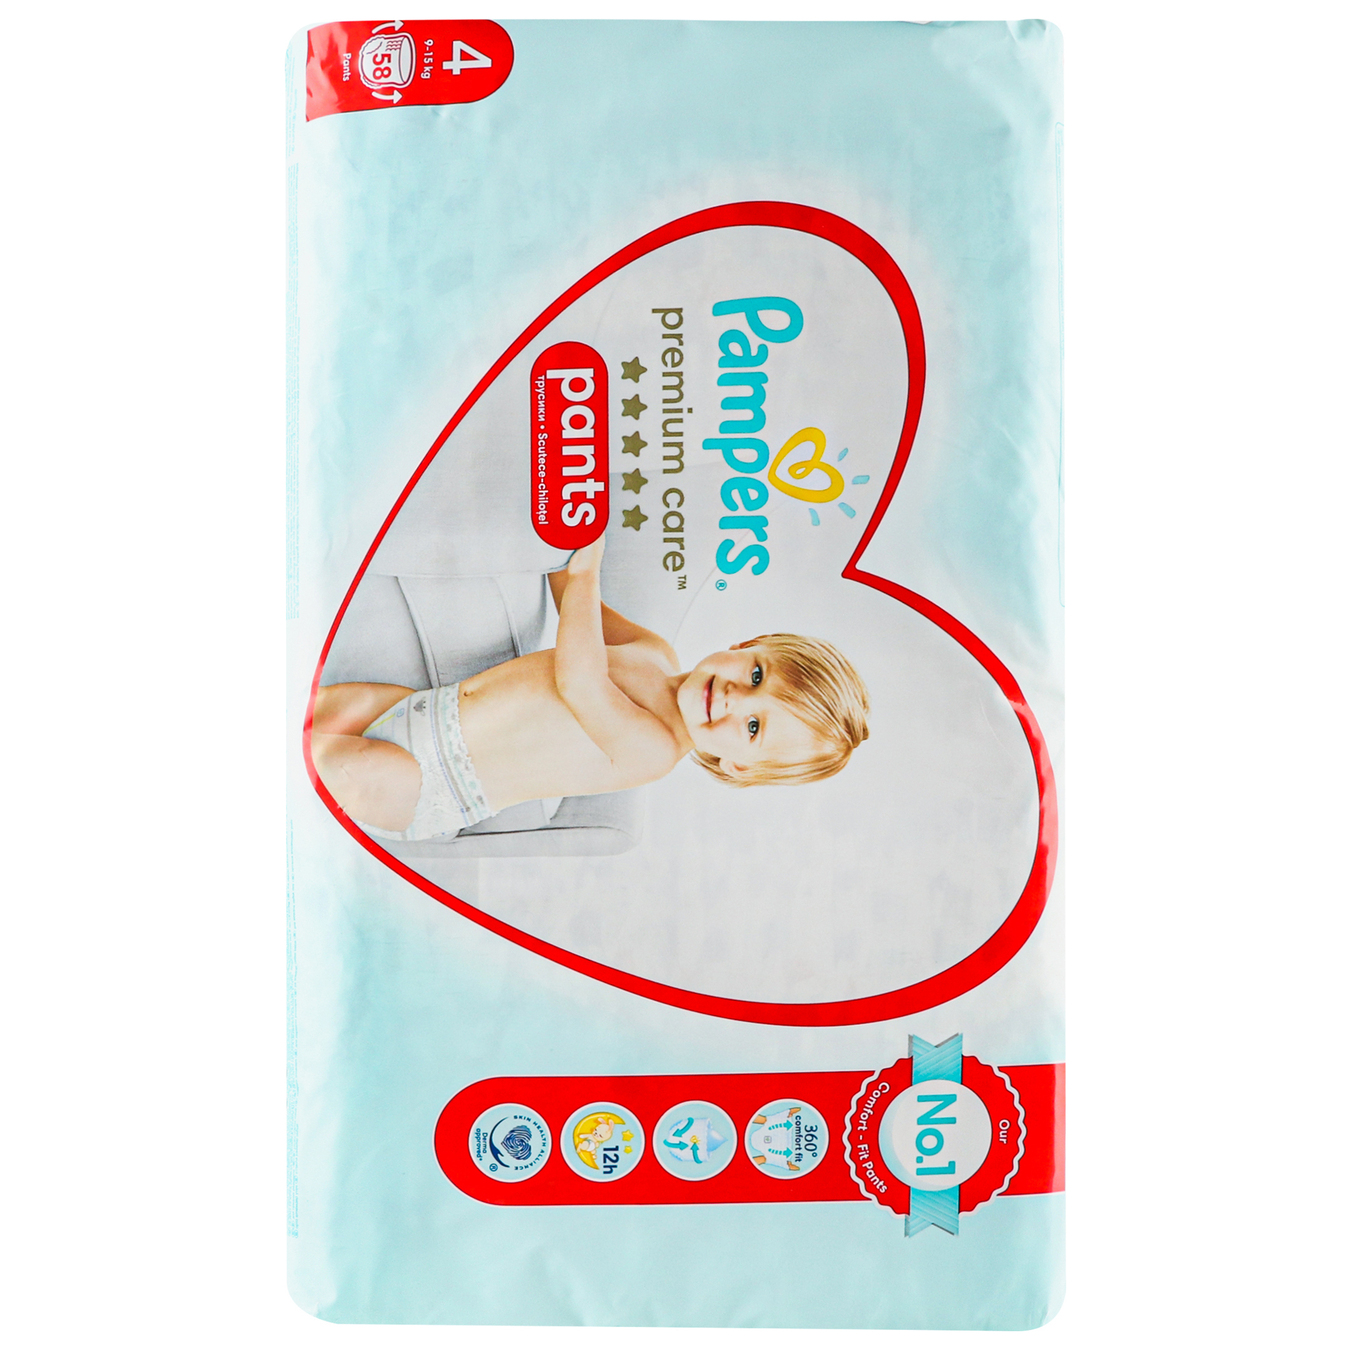 Pampers Diaper panties Premium Care 4 42248 kg children's 58 pcs 3